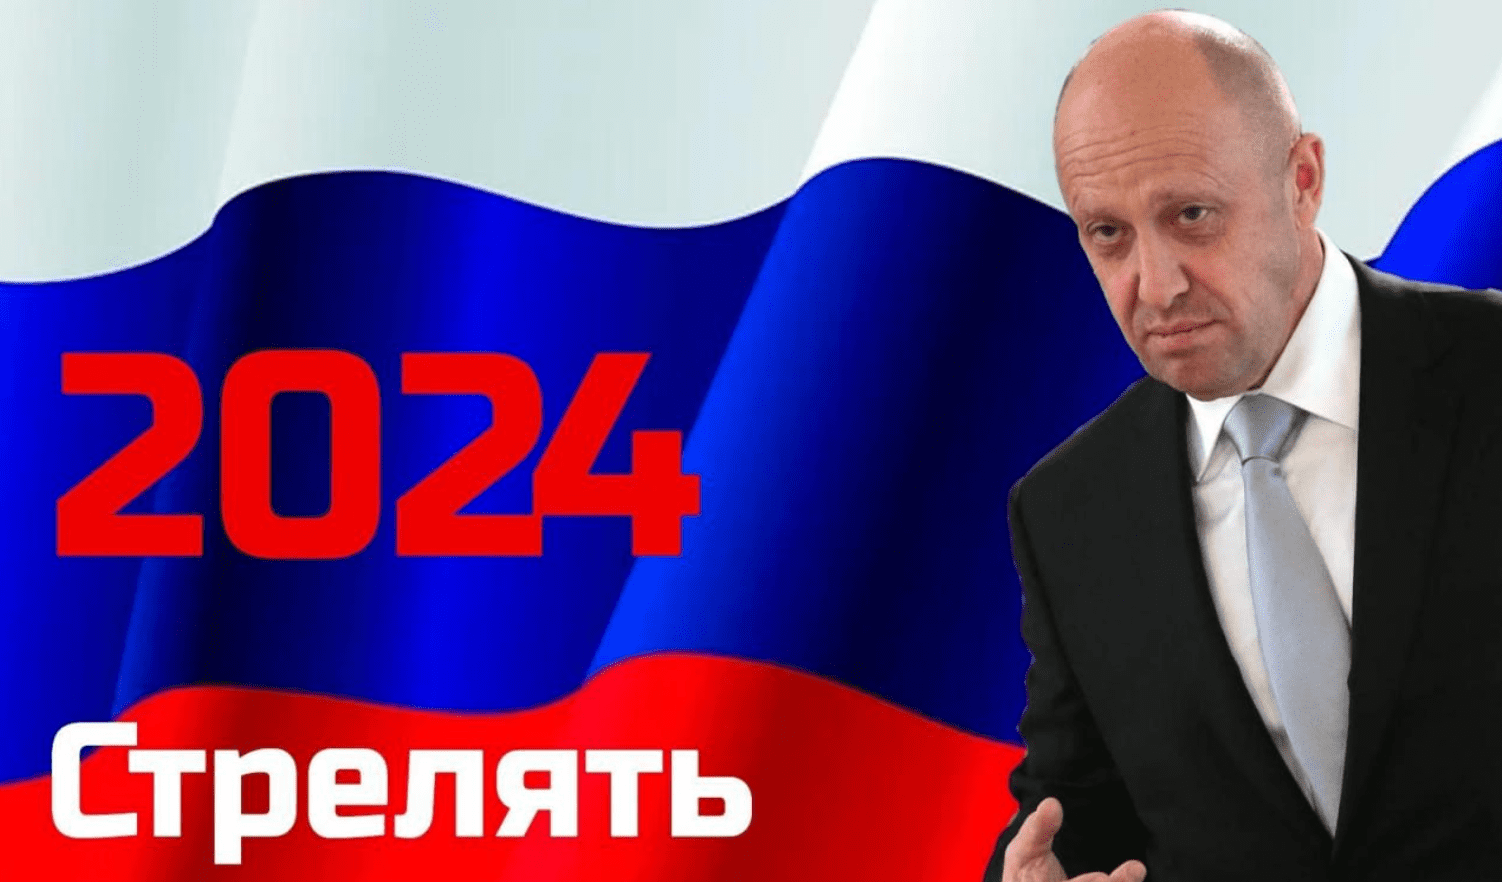 Sul web parte una campagna: "Prigozhin presidente della Russia nel 2024"